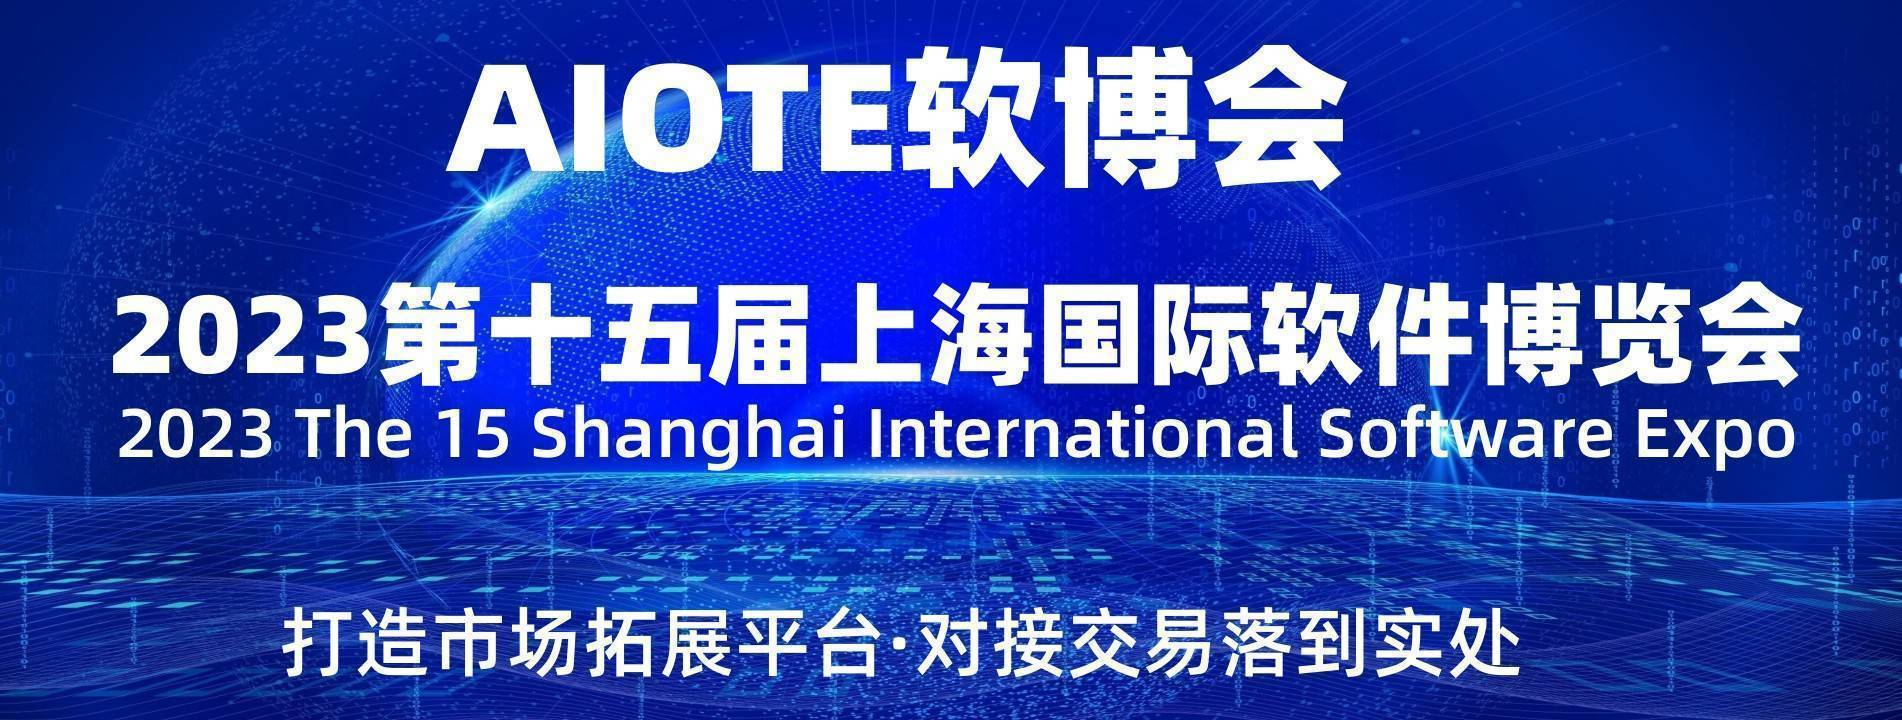 023第十五届上海国际软件博览会"